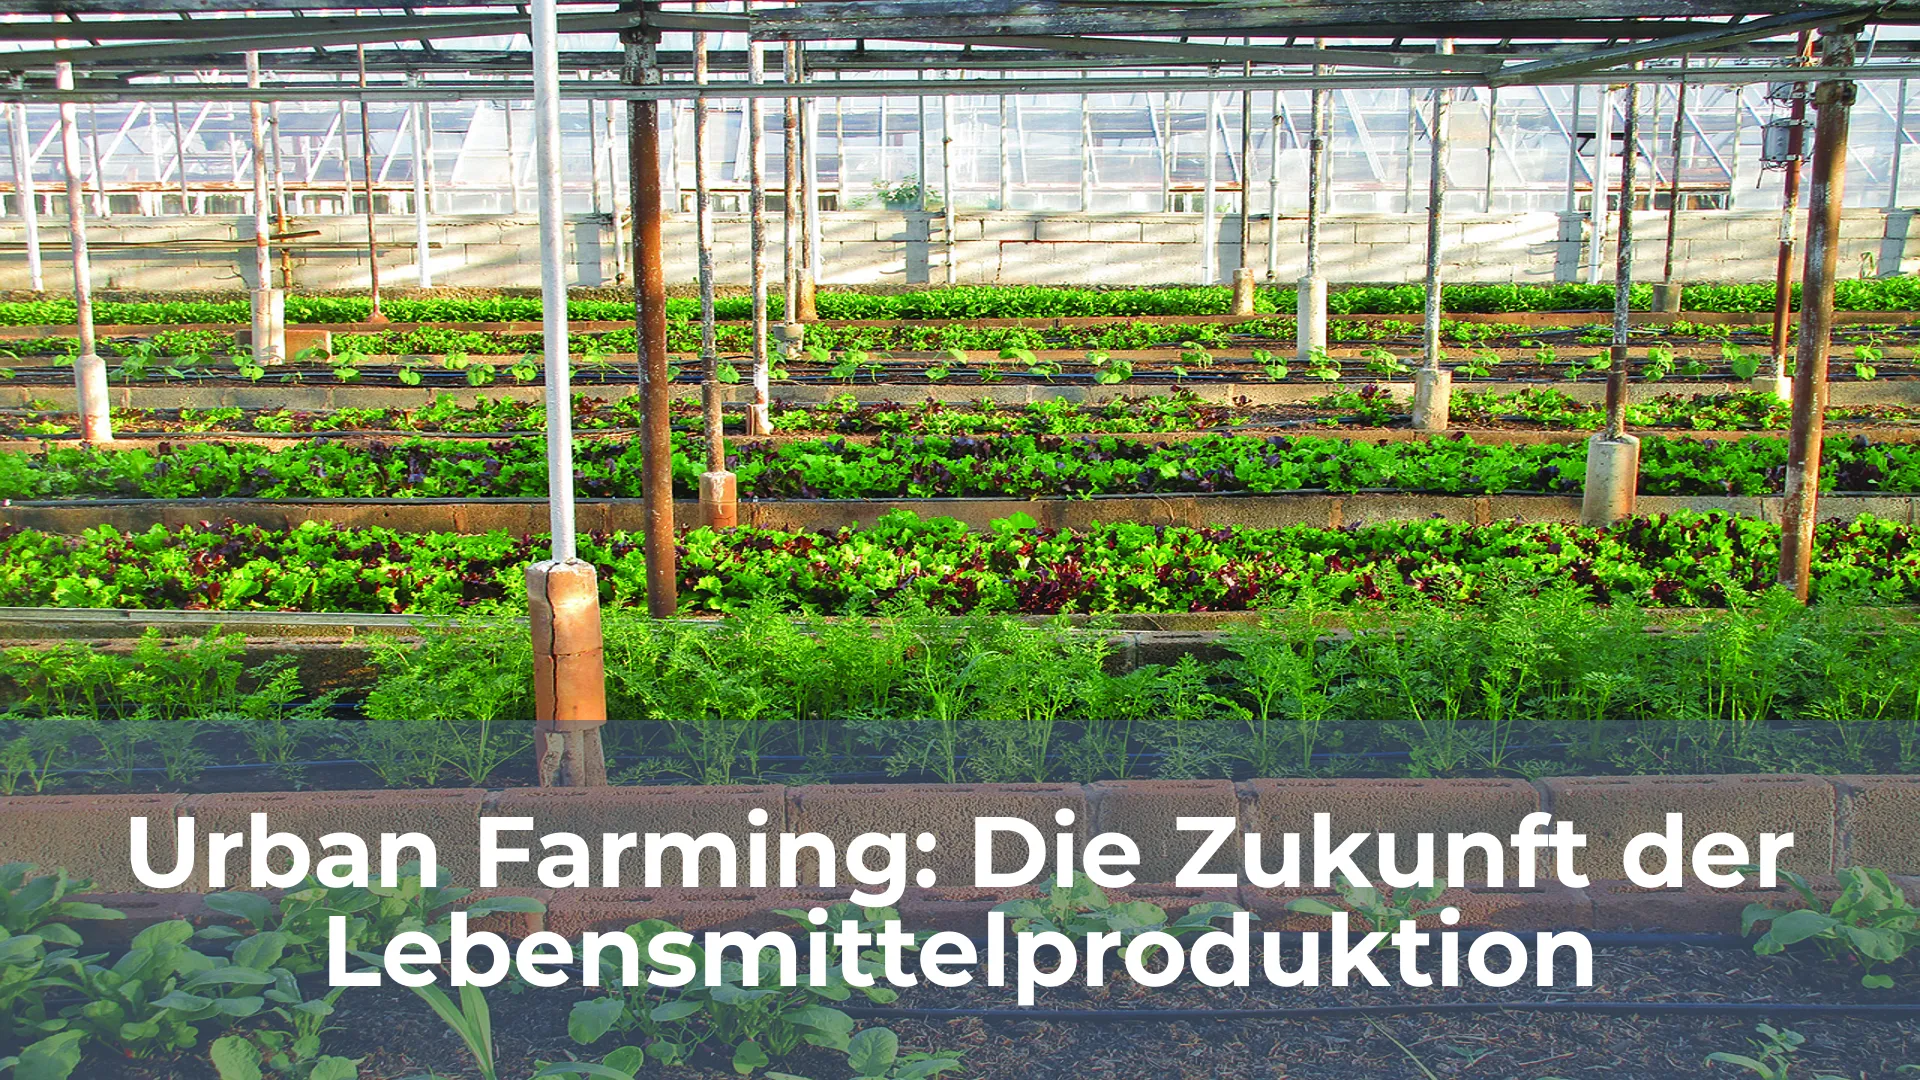 Urban farming die zukunft der lebensmittelproduktion